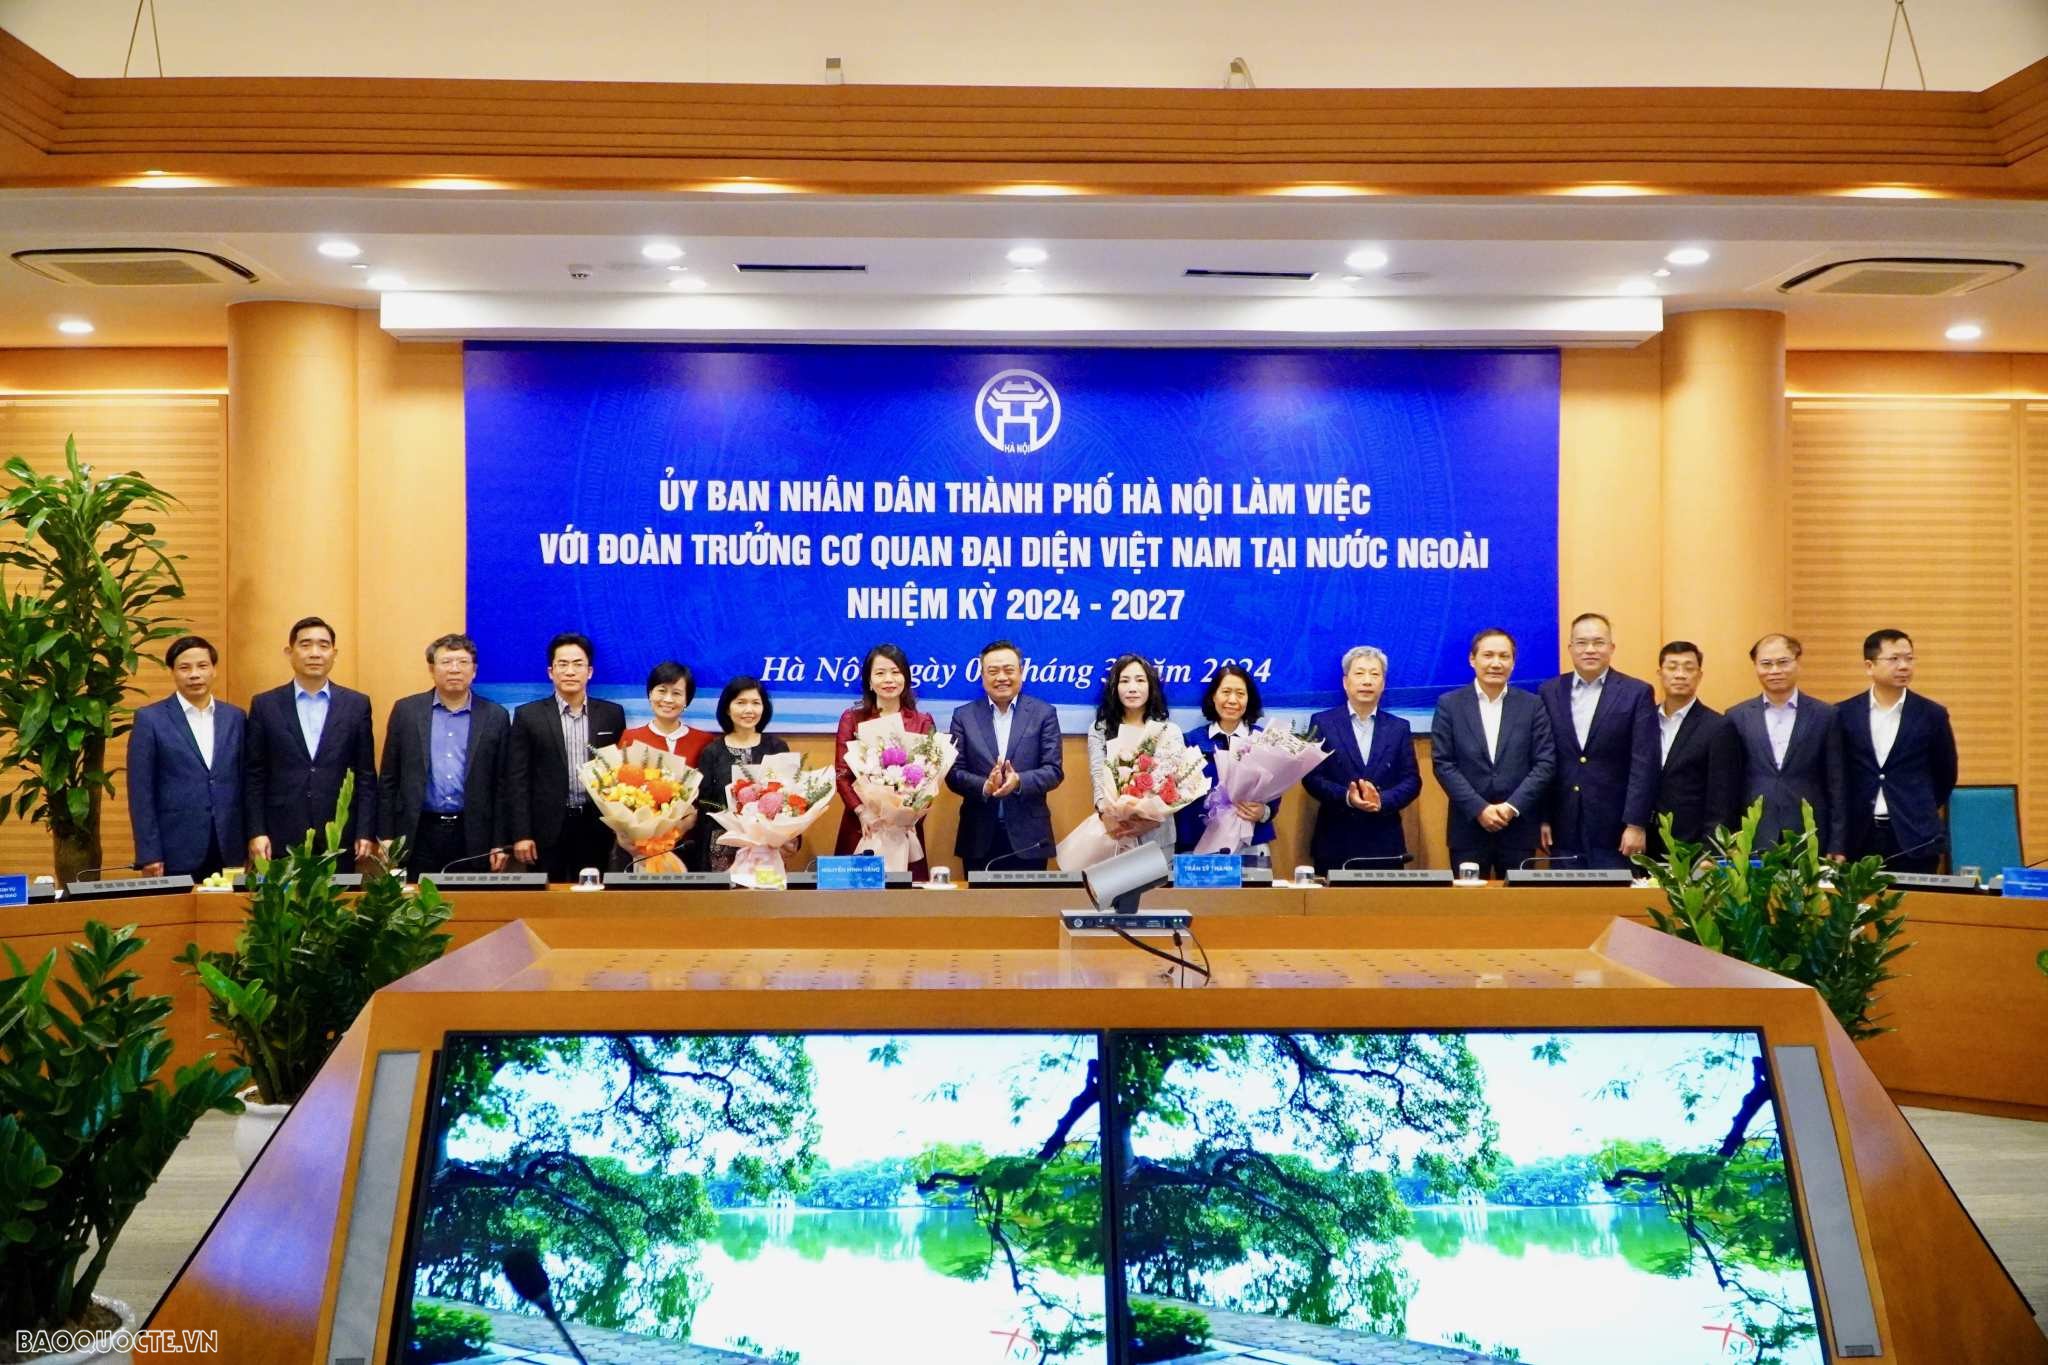 Đoàn Trưởng Cơ quan đại diện Việt Nam tại nước ngoài nhiệm kỳ 2024-2027 làm việc với UBND thành phố Hà Nội